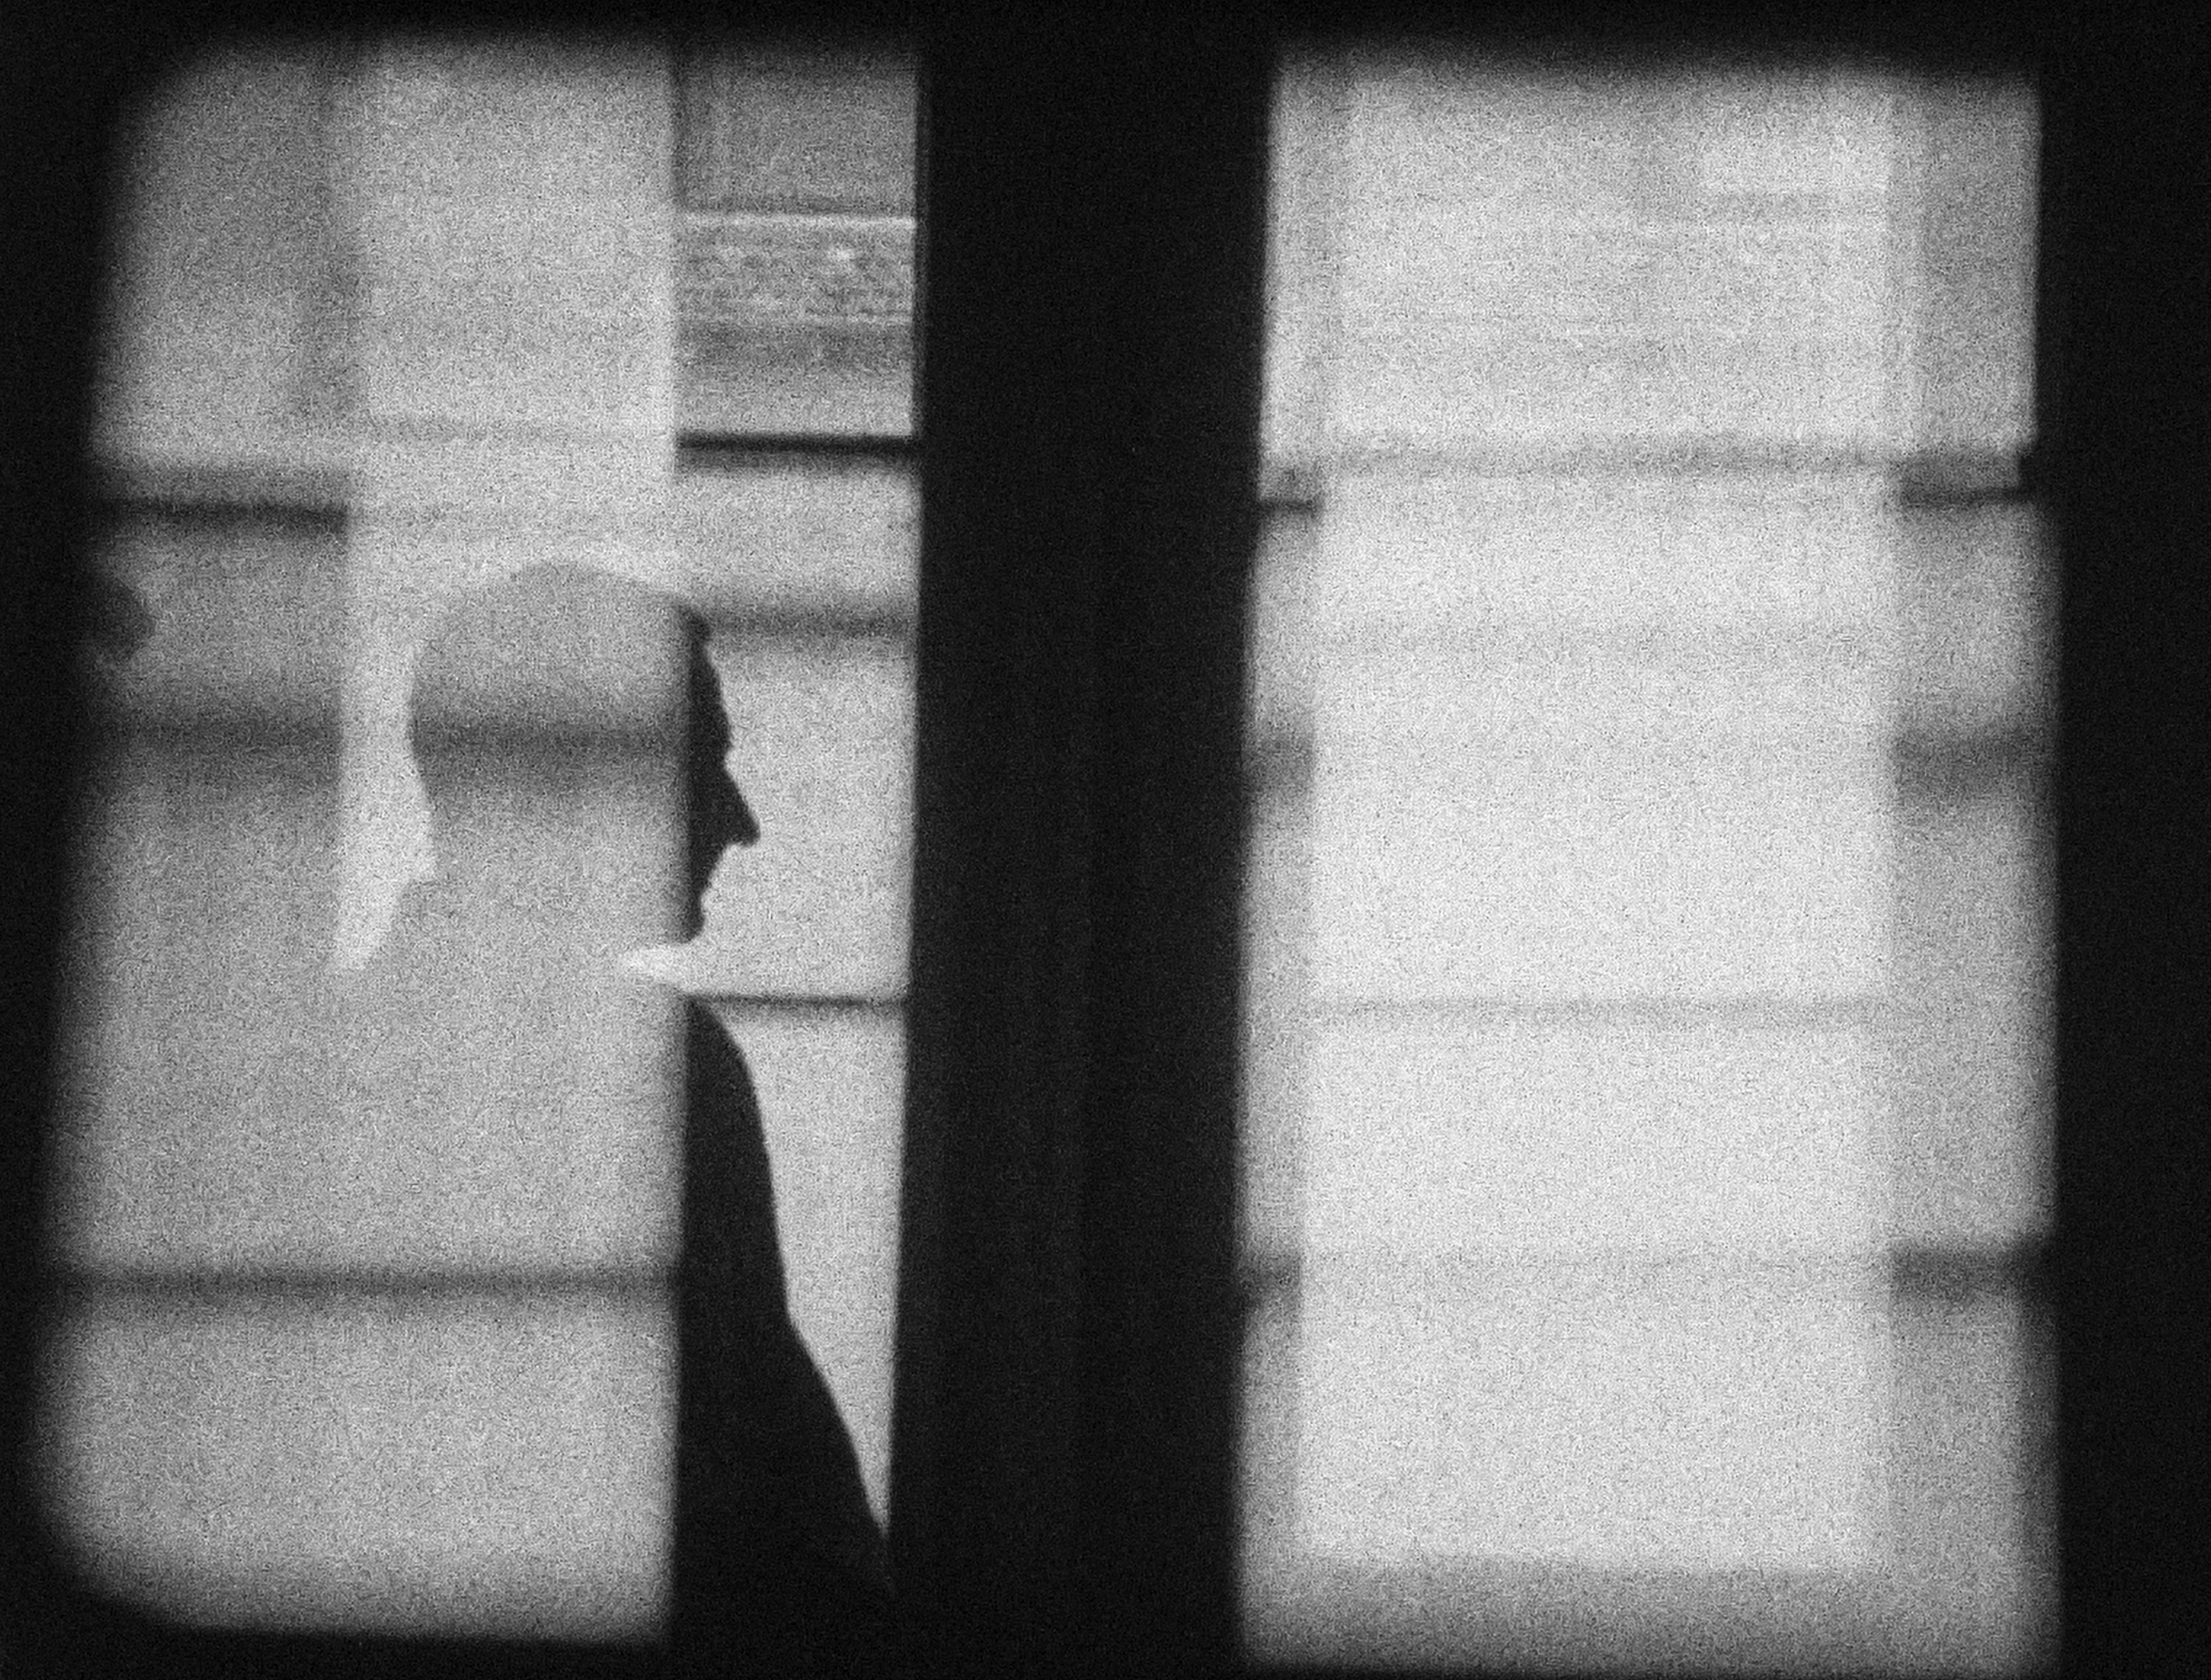 *Werner von Mutzenbecher XXVII/03 Filmmaker's afternoon, 2003 16mm Film, schwarz-weiss, ohne Ton, 6 Min. Kunstmuseum Basel, Ankauf 2004*